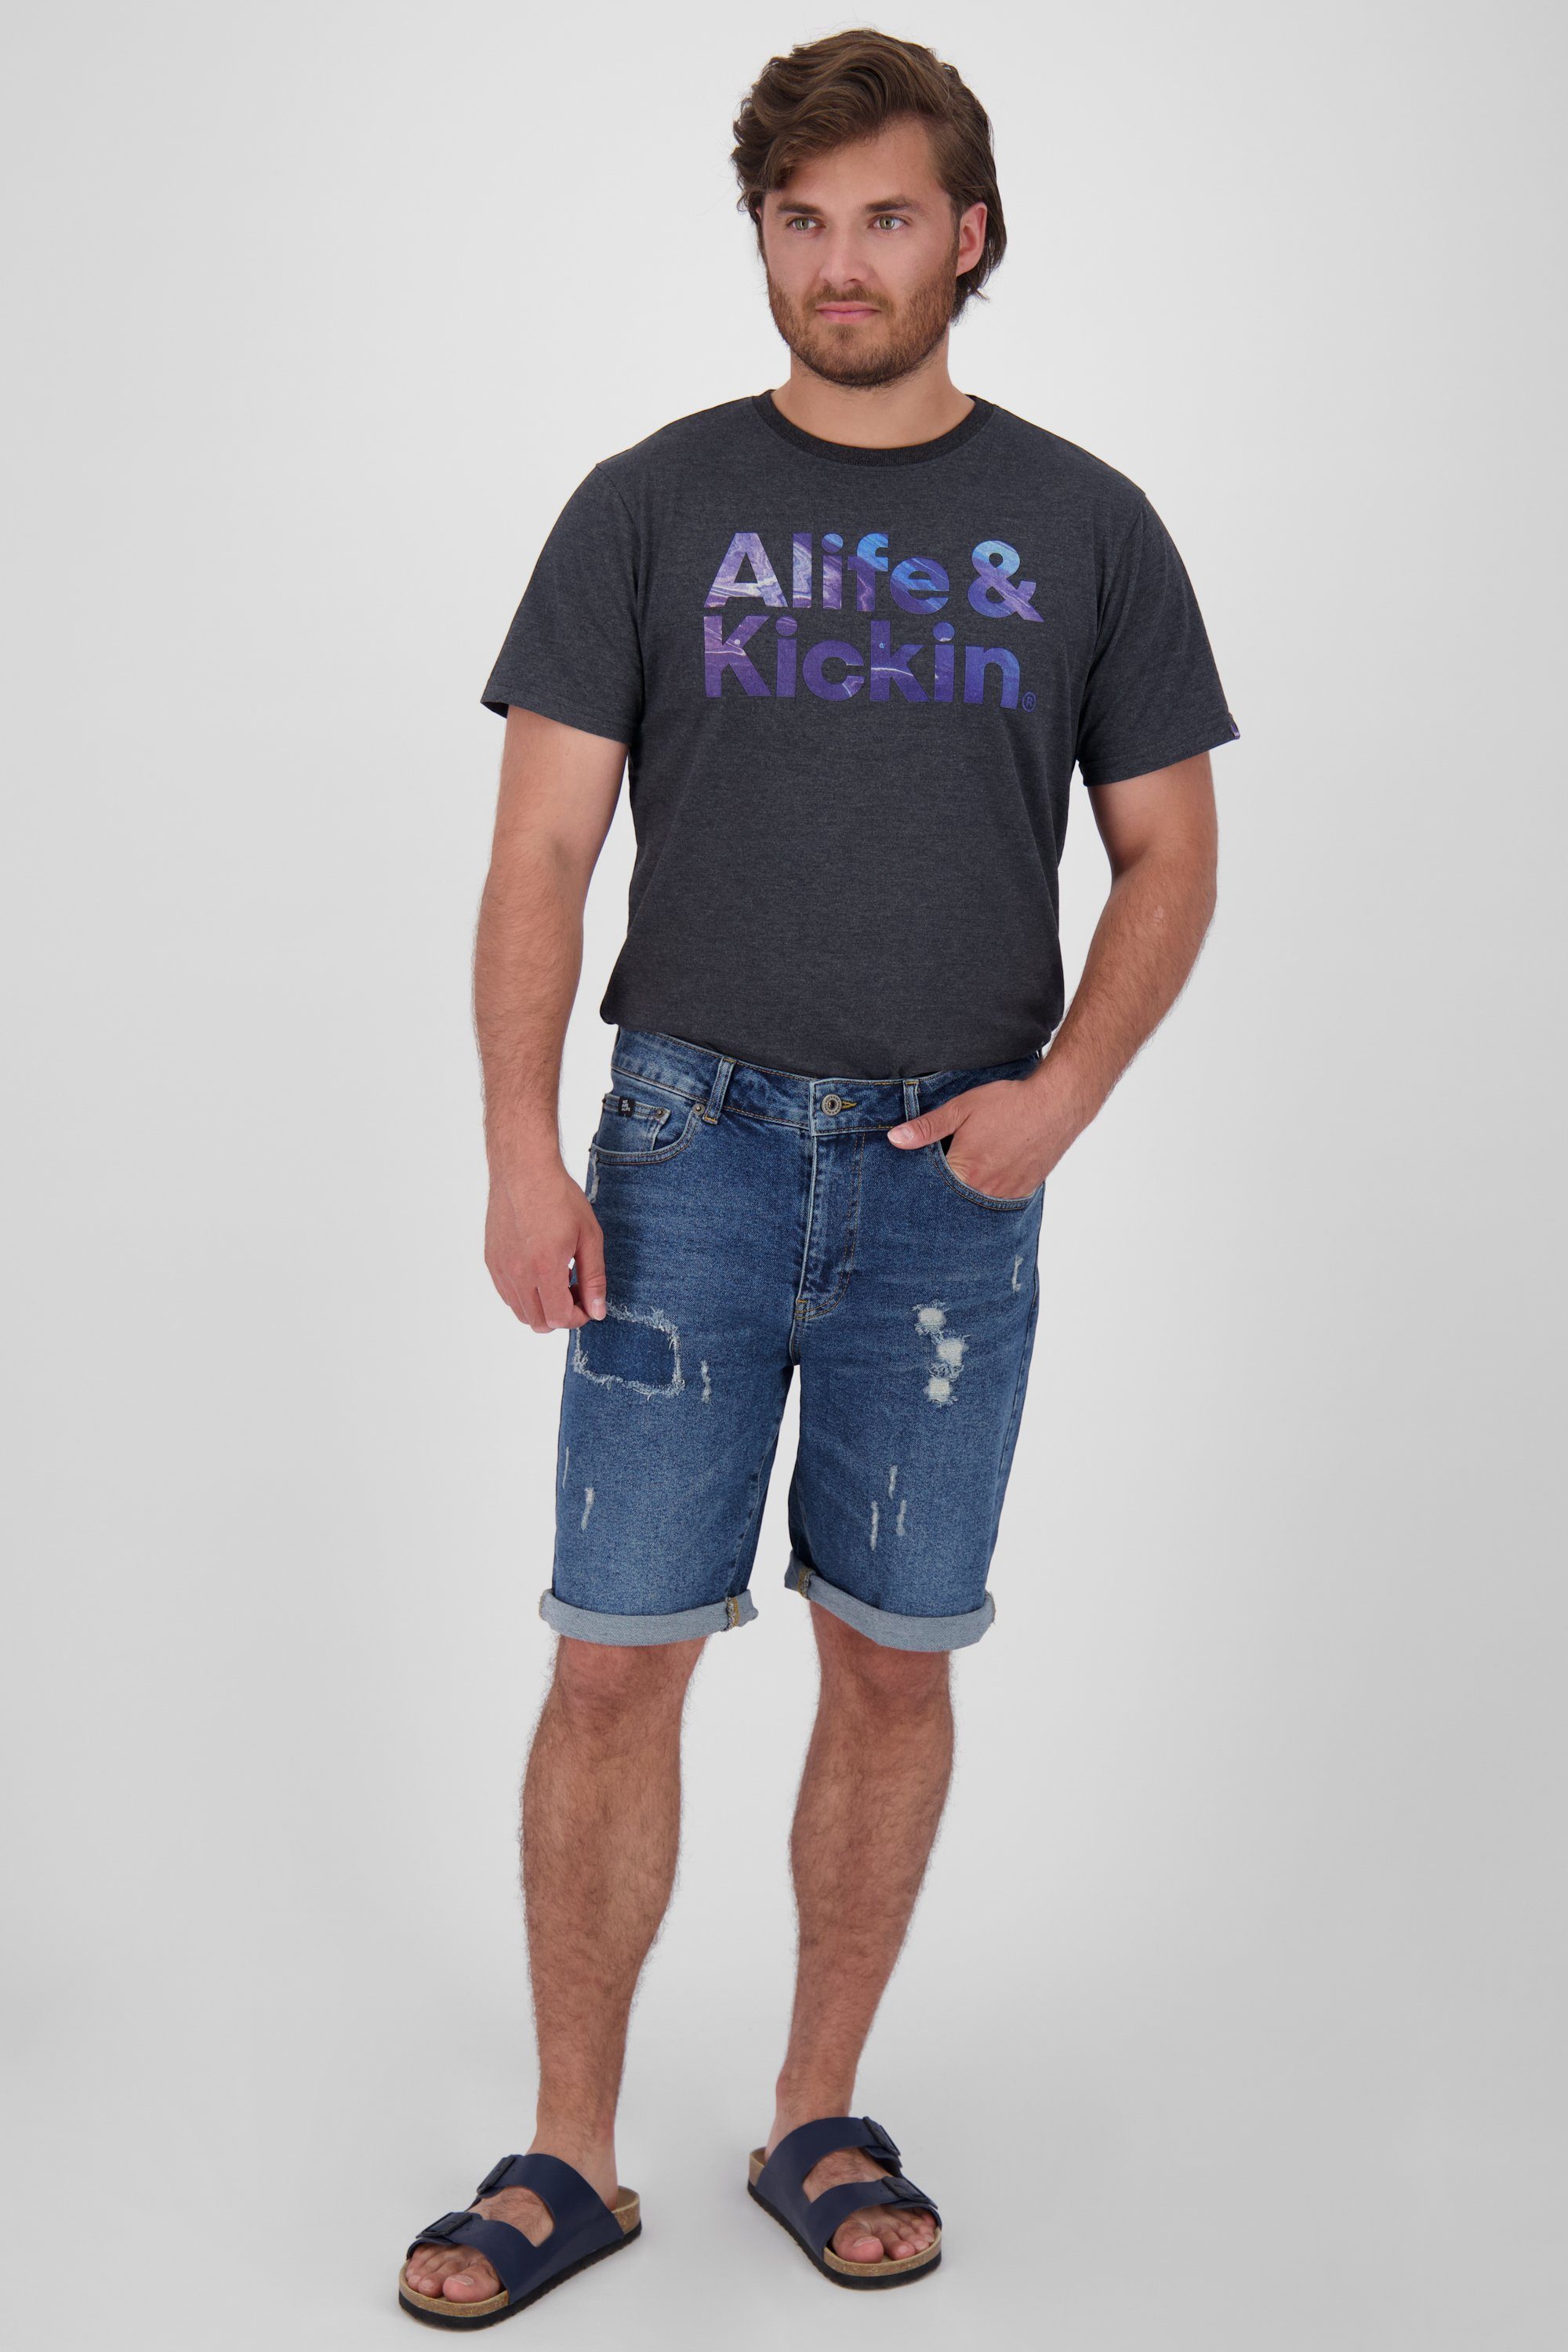 Jeansshorts, Shorts Herren kurze Hose denim A washed MorganAK Shorts & DNM dark Alife Kickin